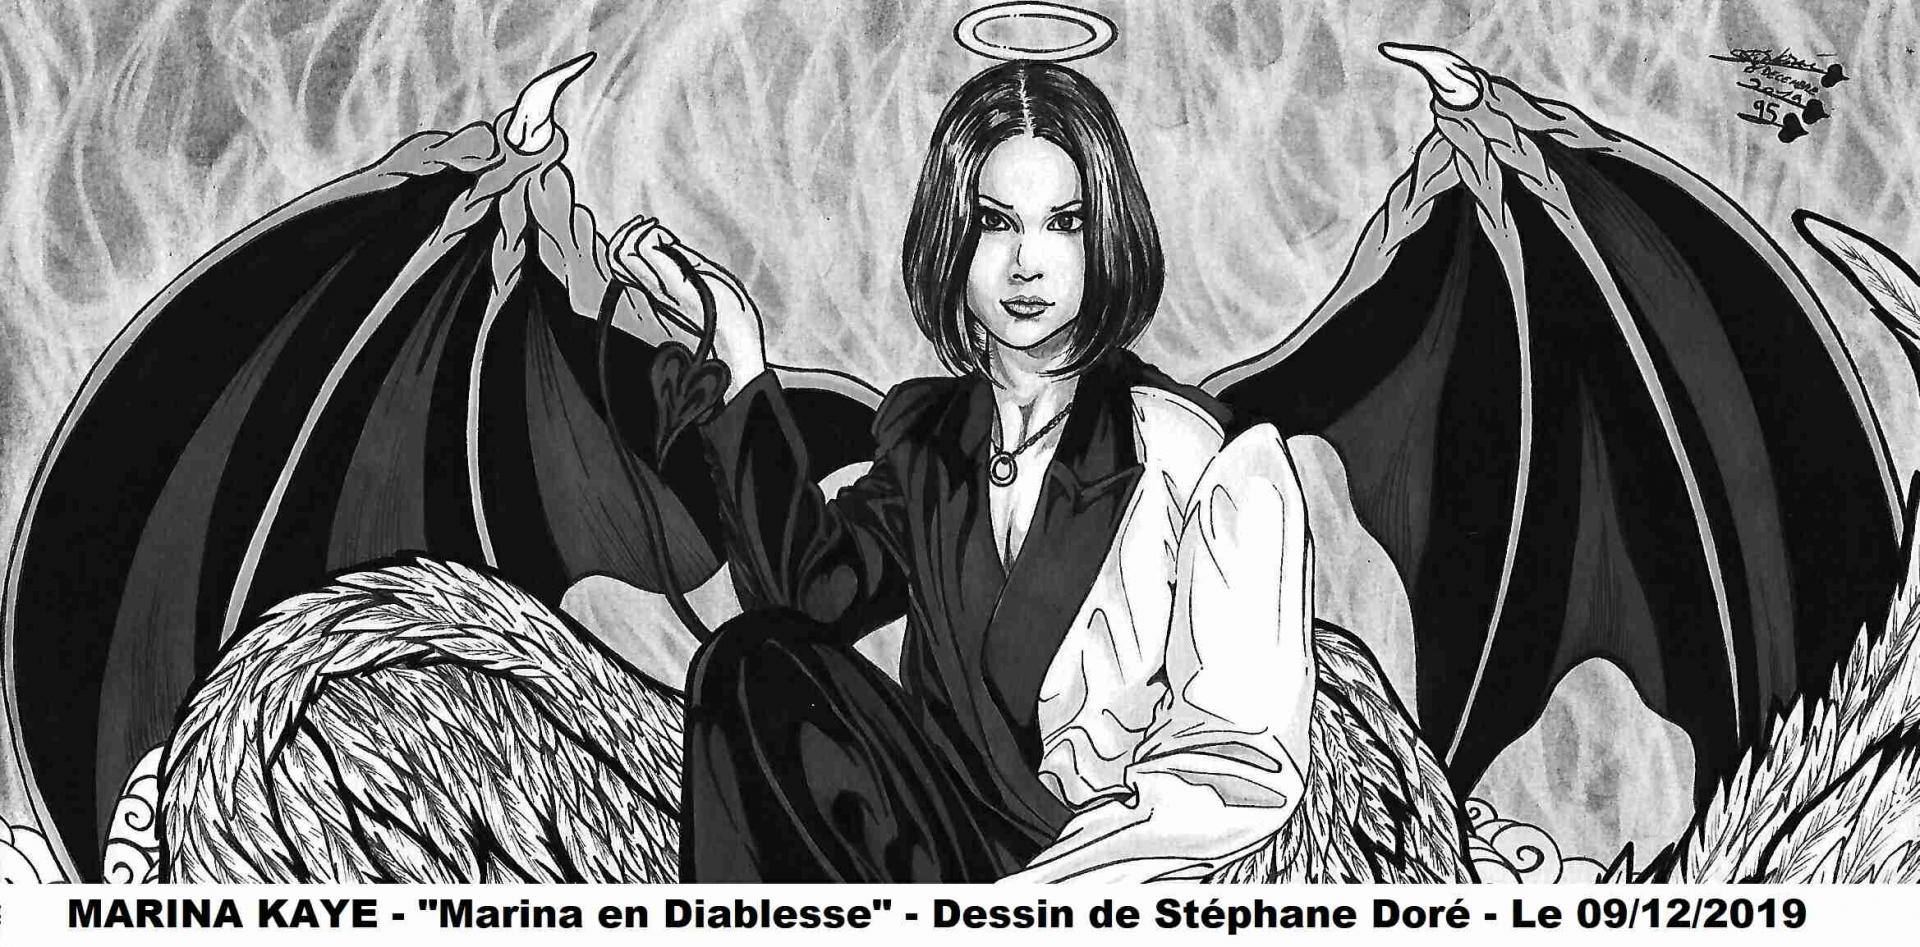 Marina en diablesse - dessin de Stéphane doré